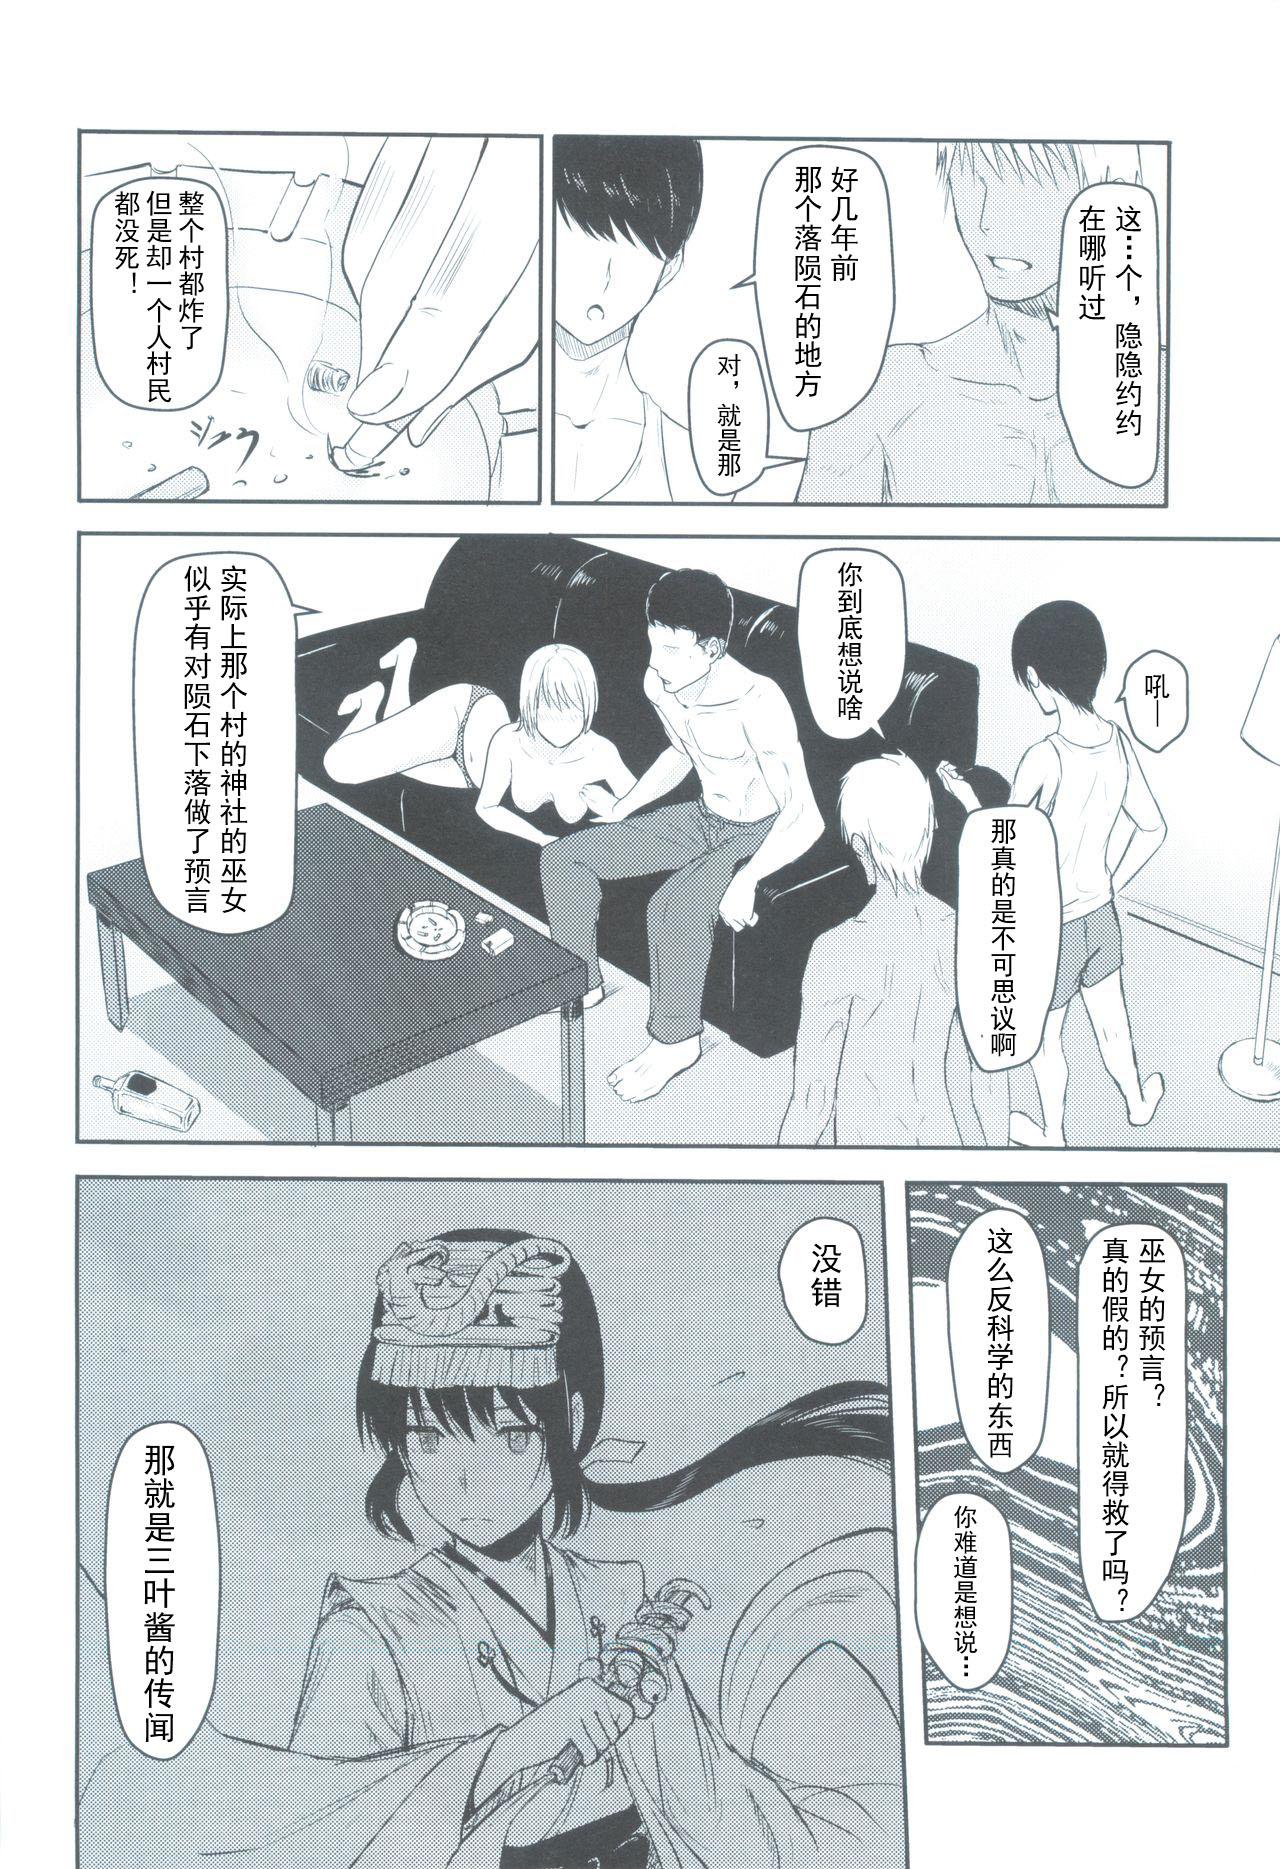 Amigos Mitsuha - Kimi no na wa. Caught - Page 5